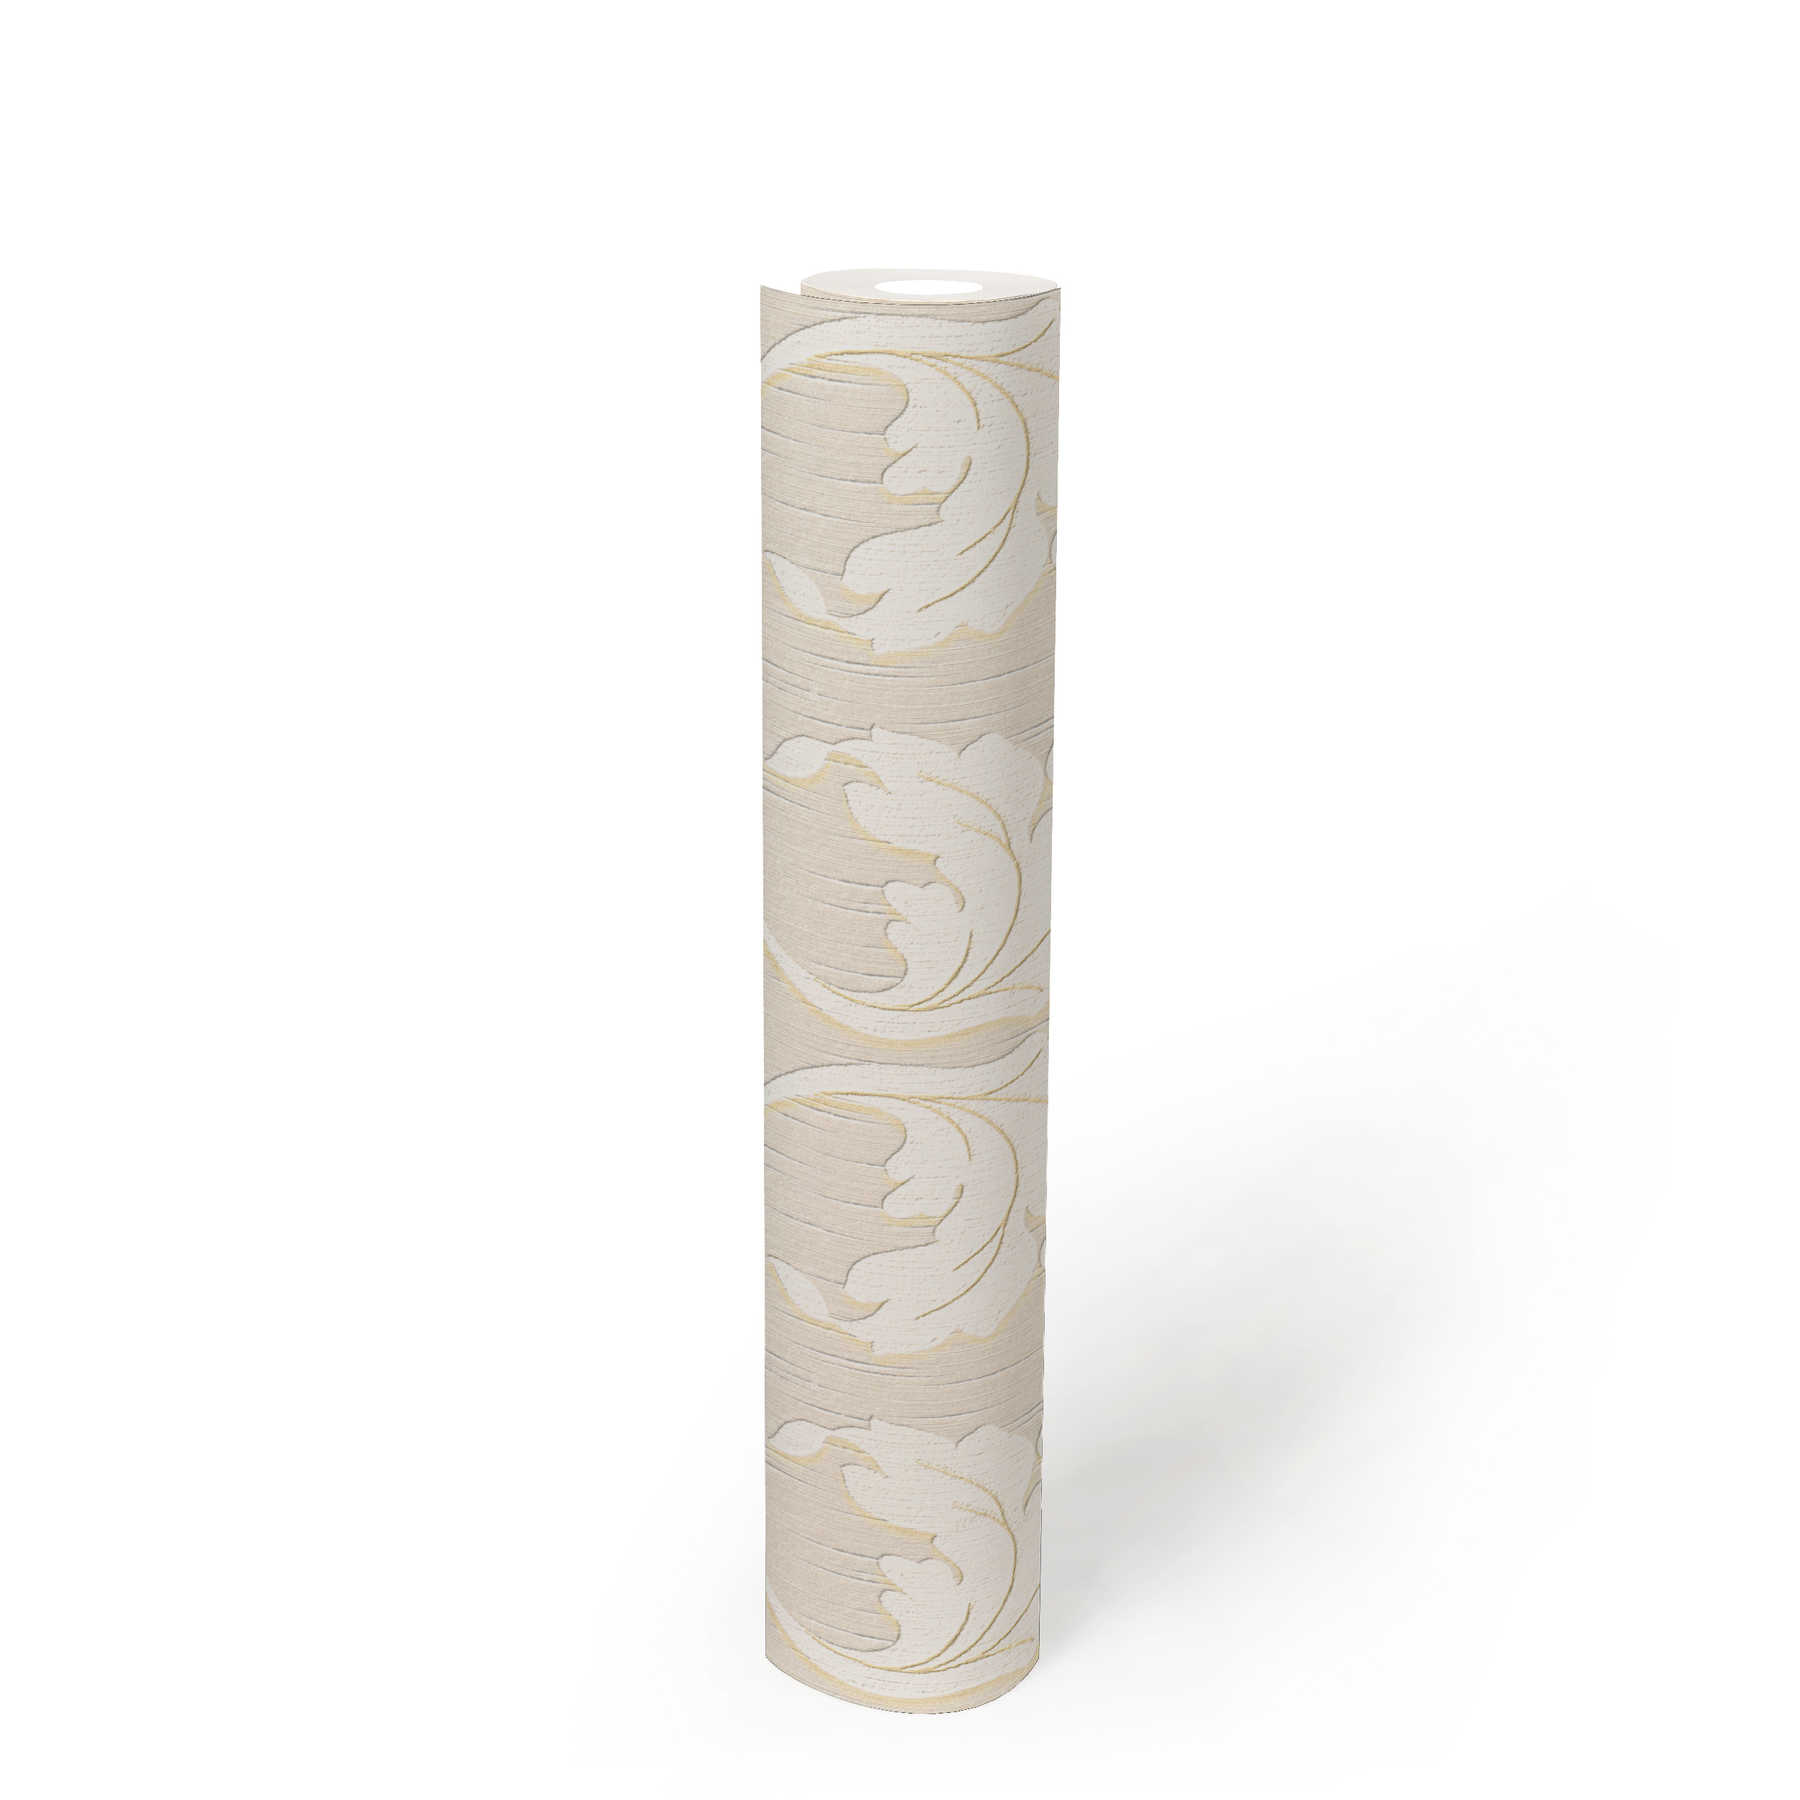             papier peint en papier textile premium avec ornement rinceaux - beige, crème, or
        